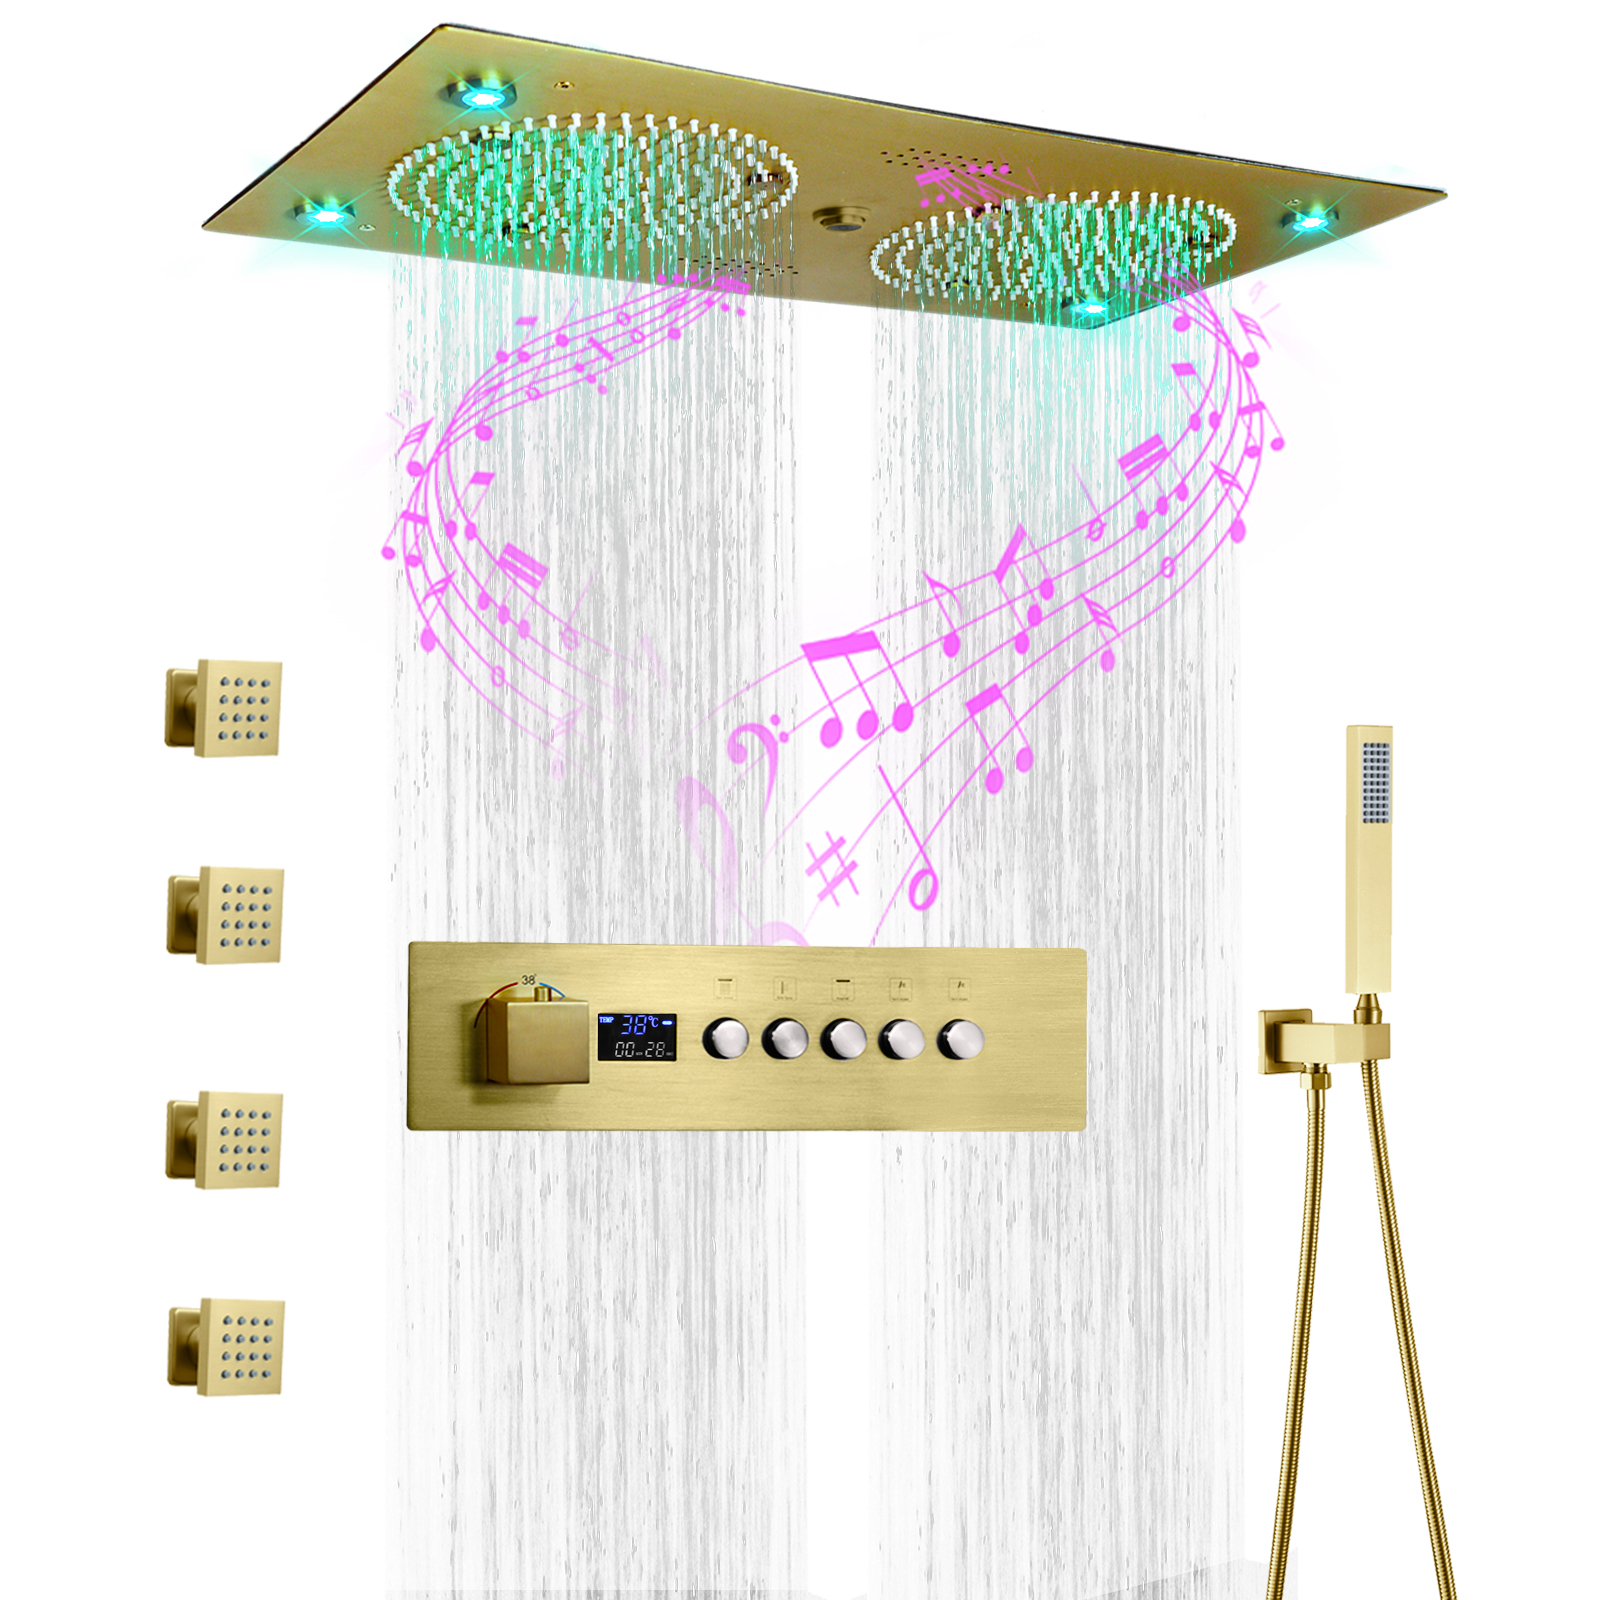 24.5x12.5 بوصة نحى الذهب LED نظام دش الموسيقى مجموعة الحمام دش ارتفاع درجة الحرارة المياه التنين تدليك رئيس حقن